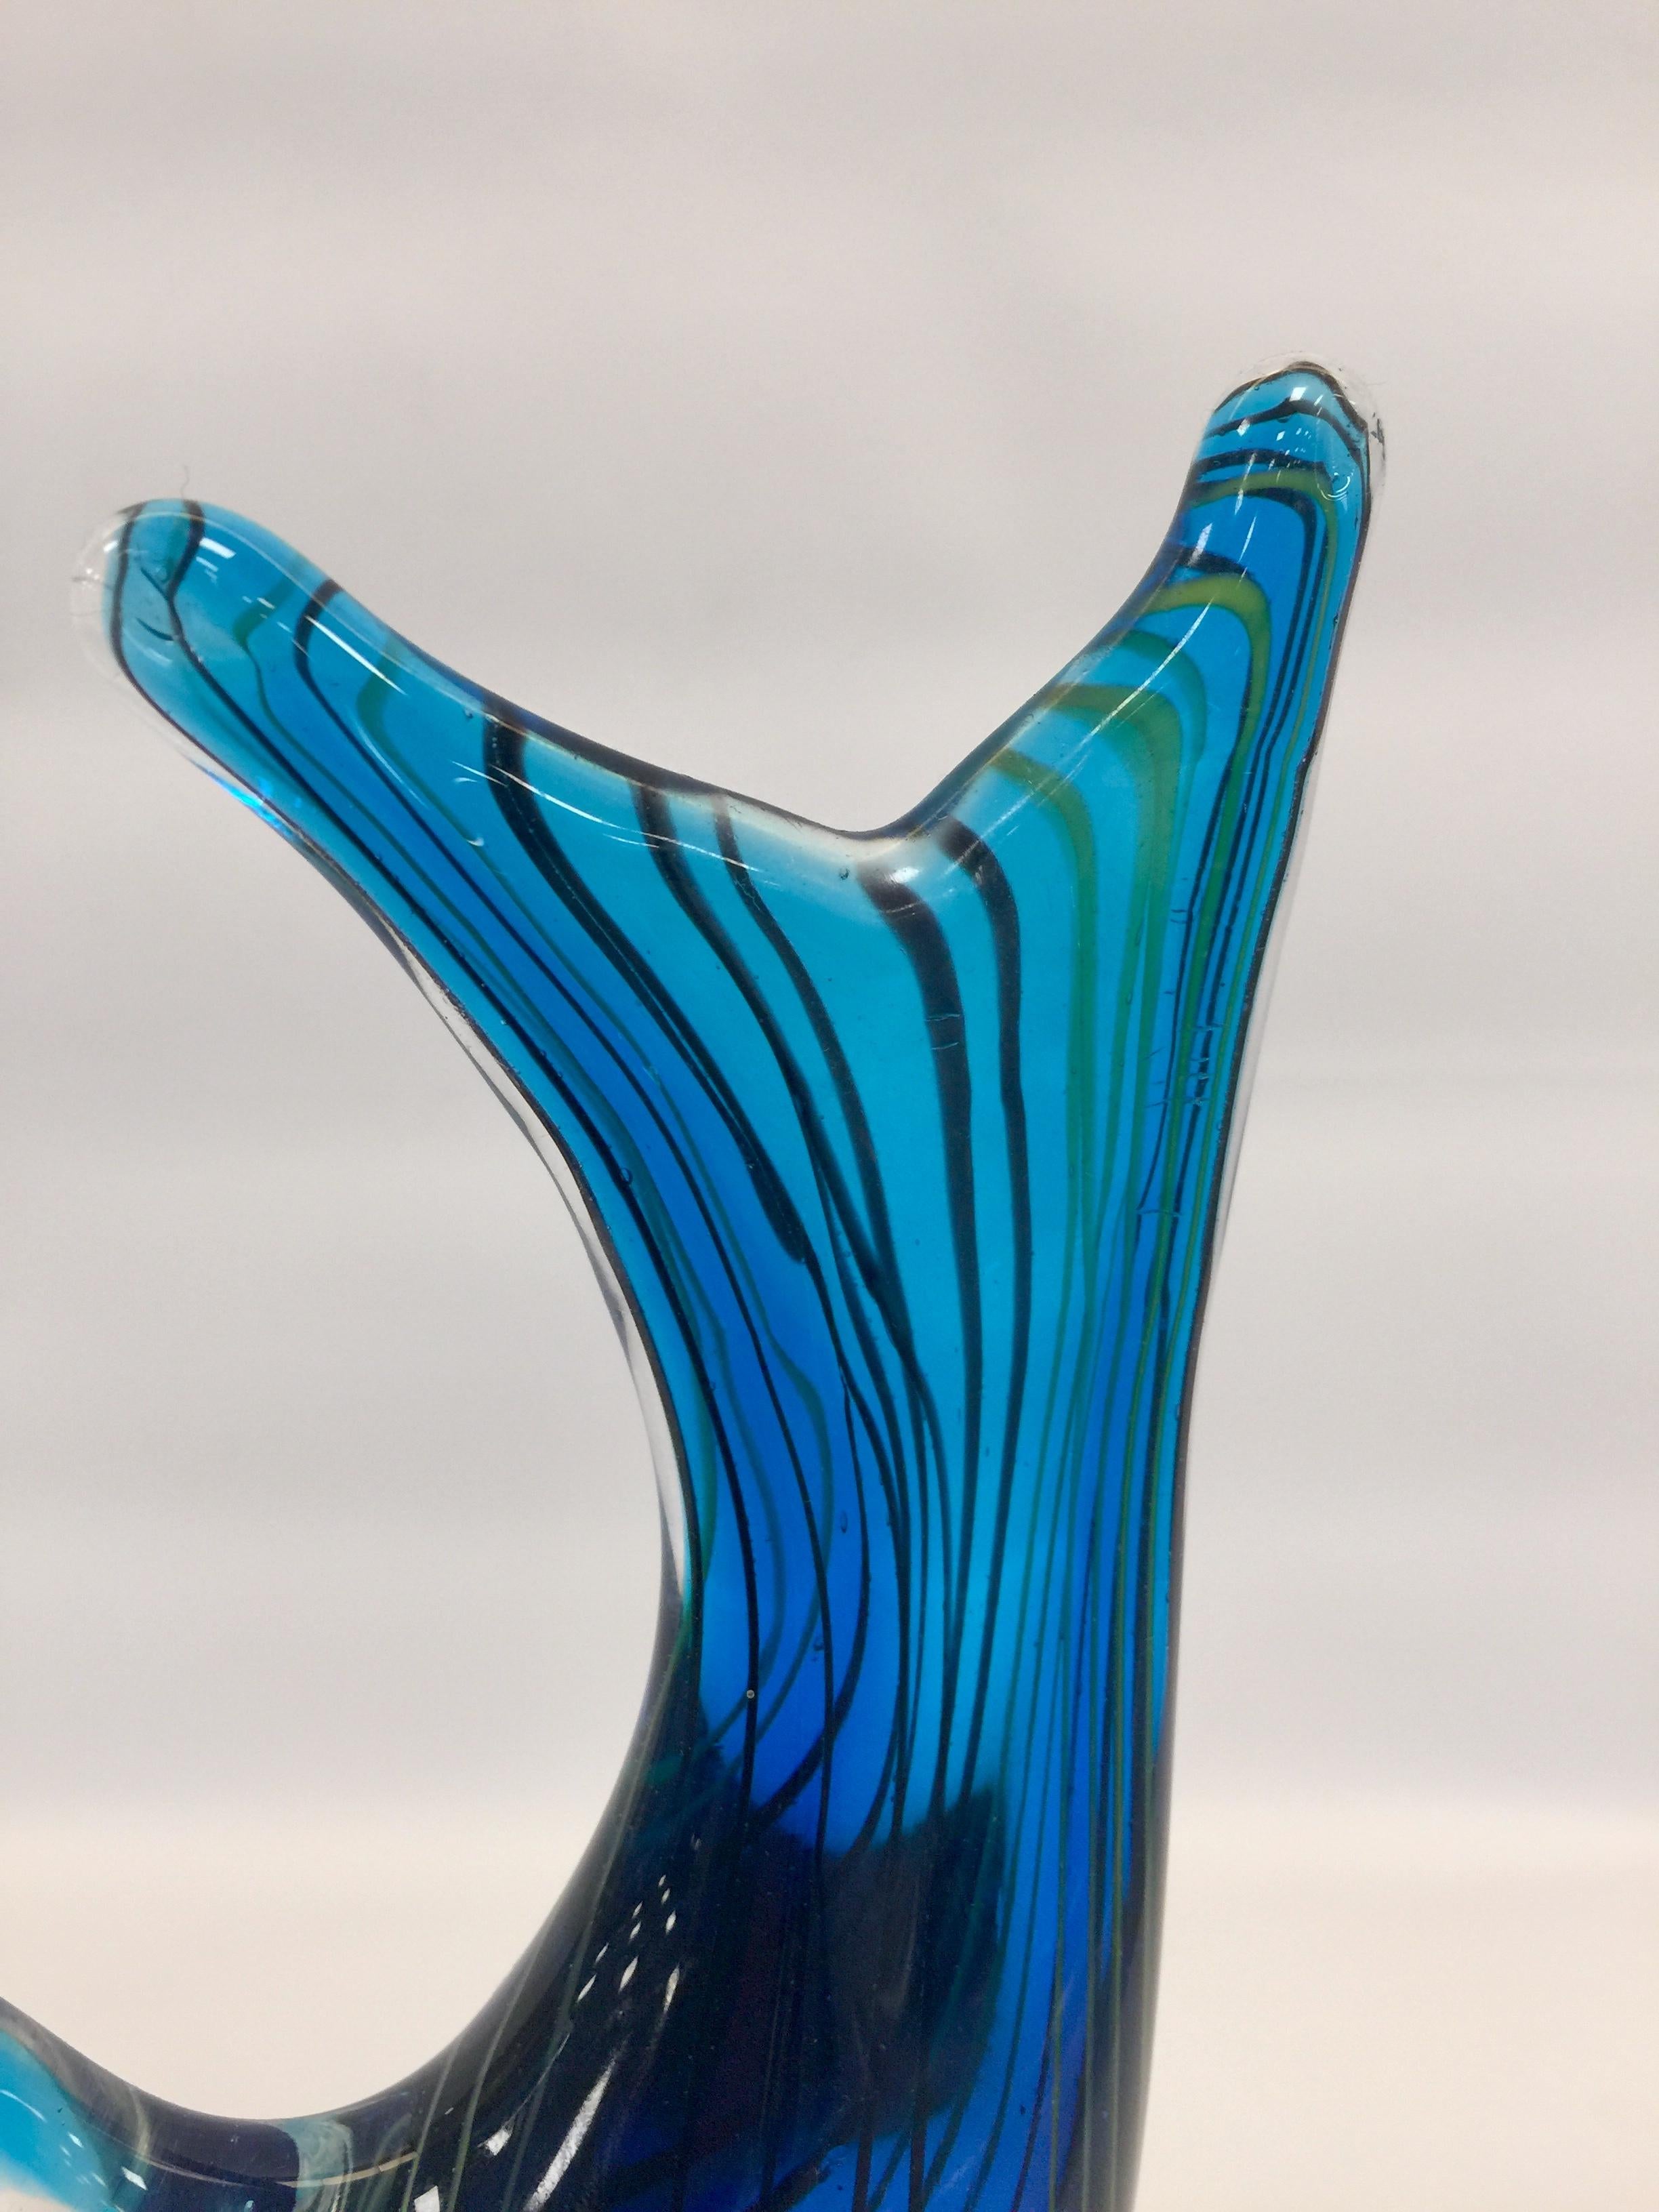 Appliqué Albarelli 1950 Multi-Color Fish in Murano Glass with Filigree For Sale